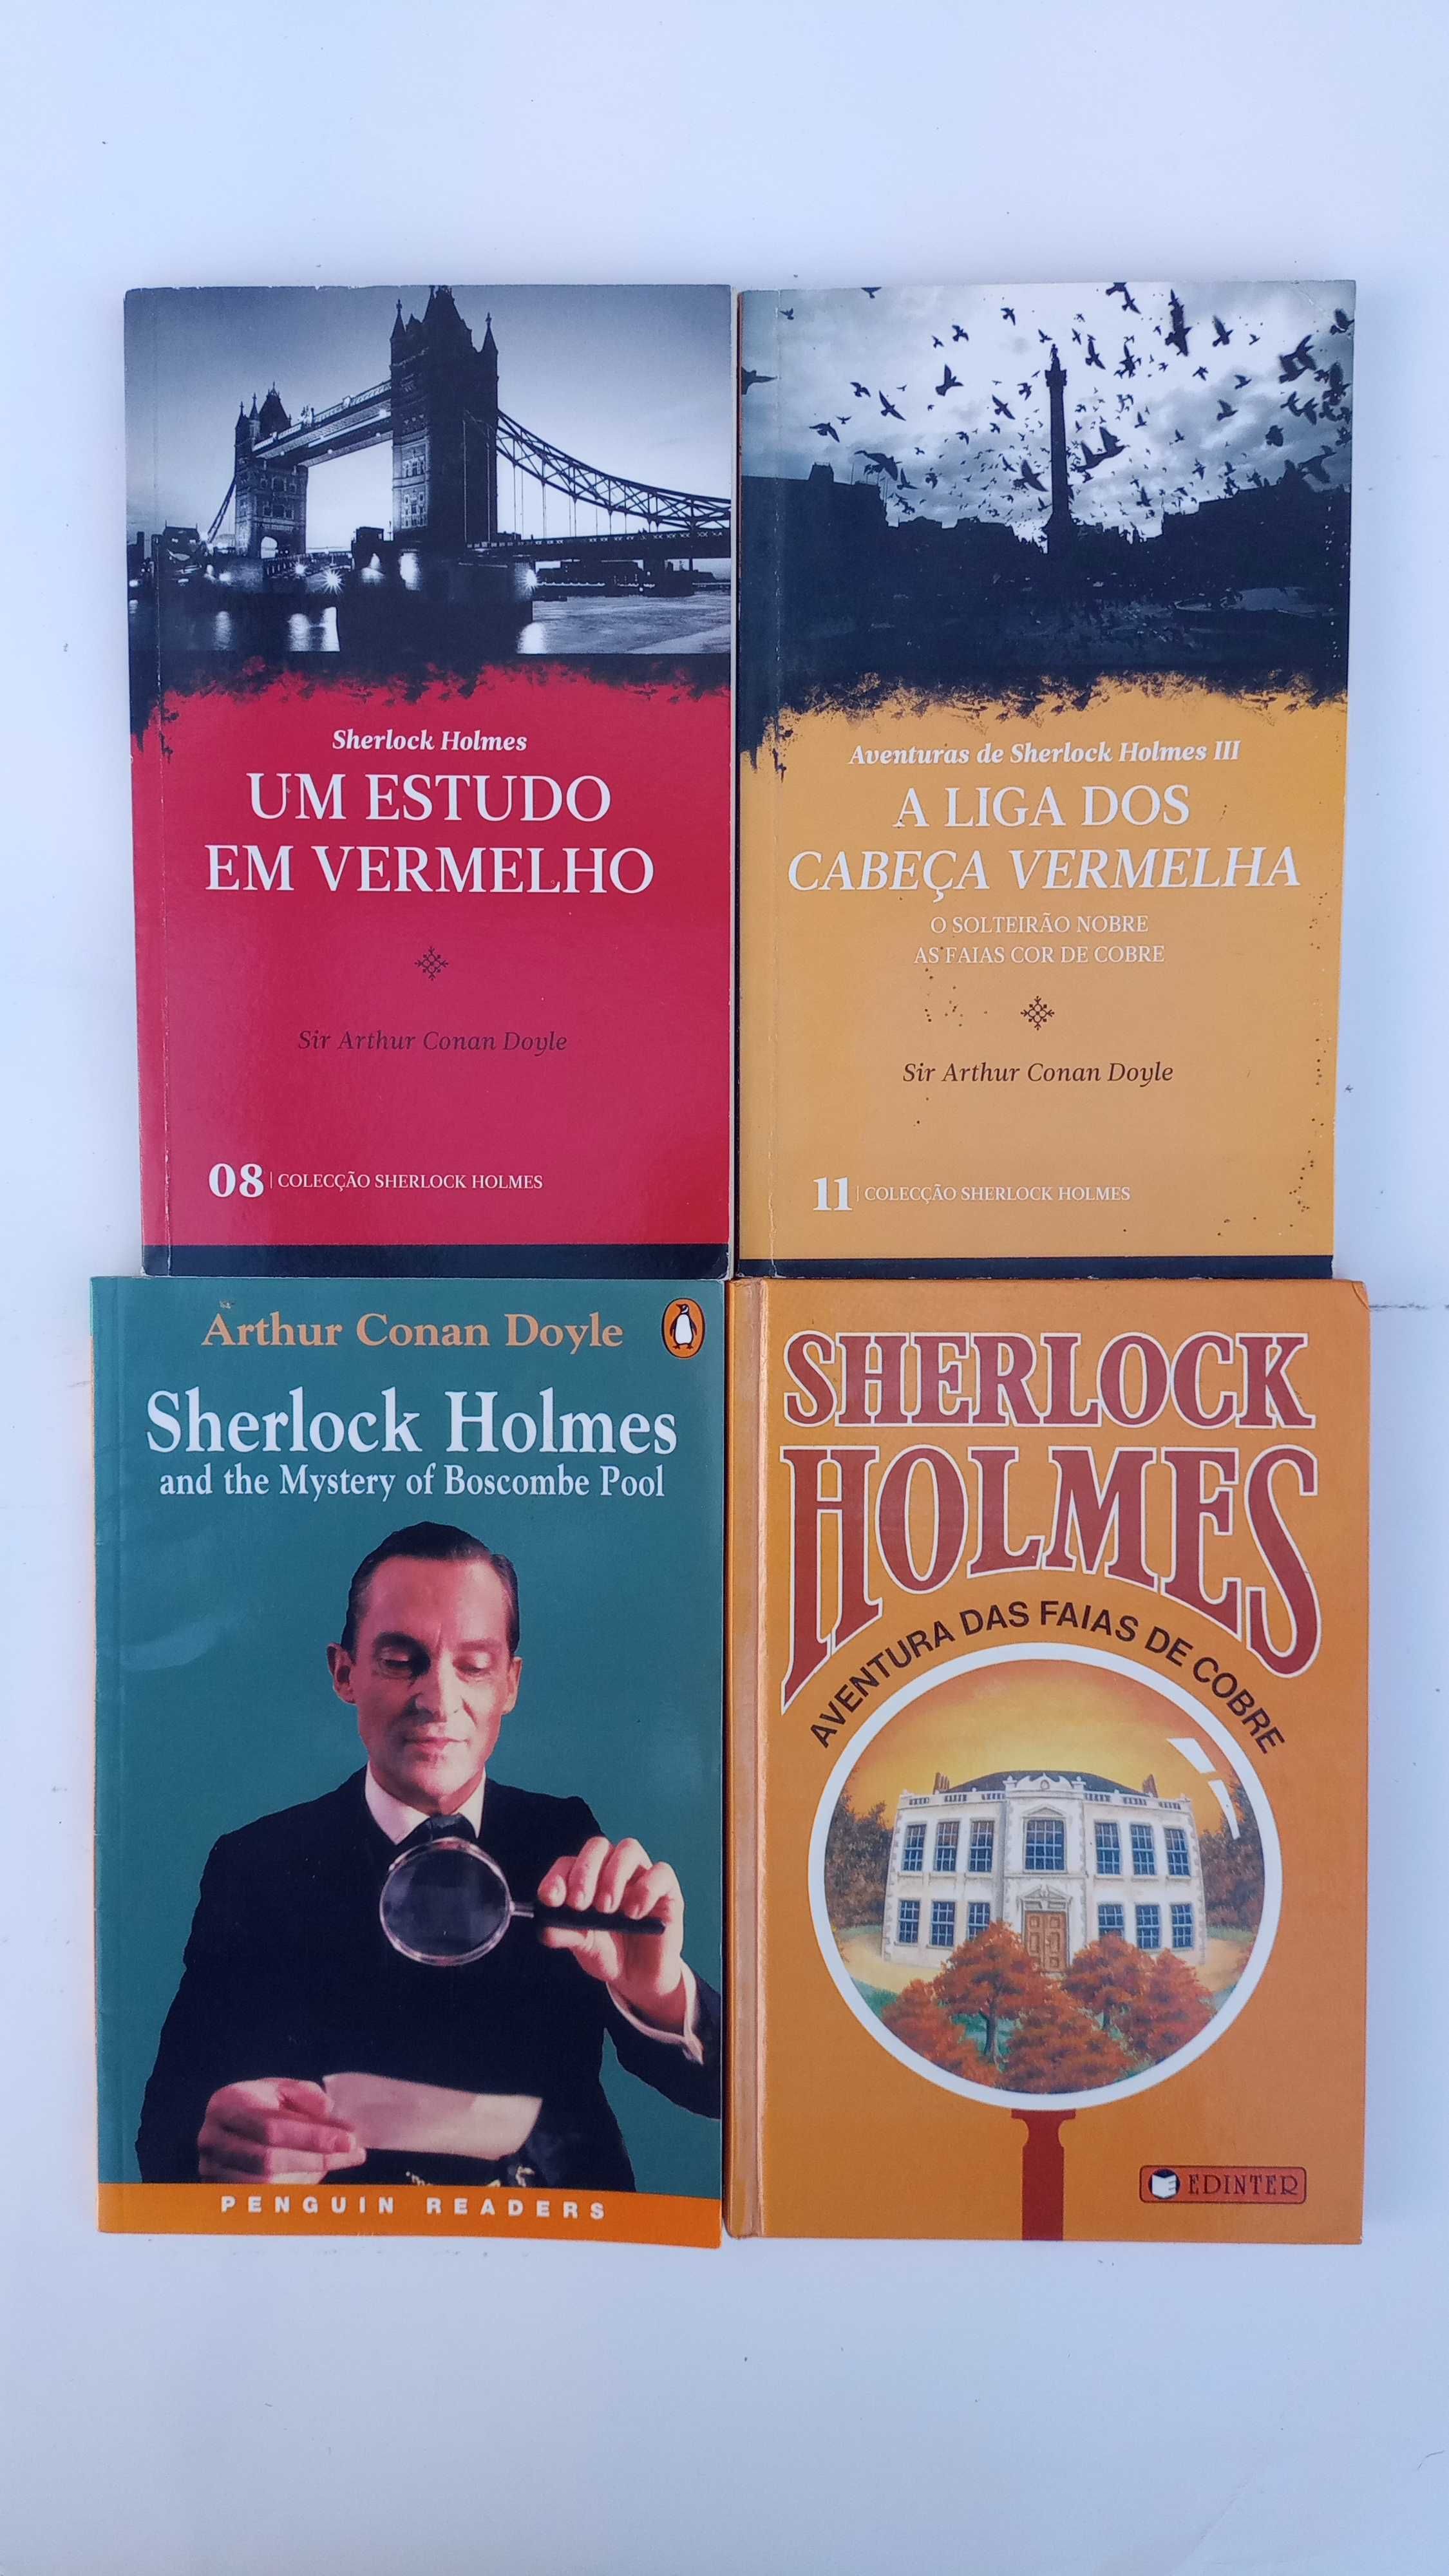 Sherlock Holmes - Vários livros/preços